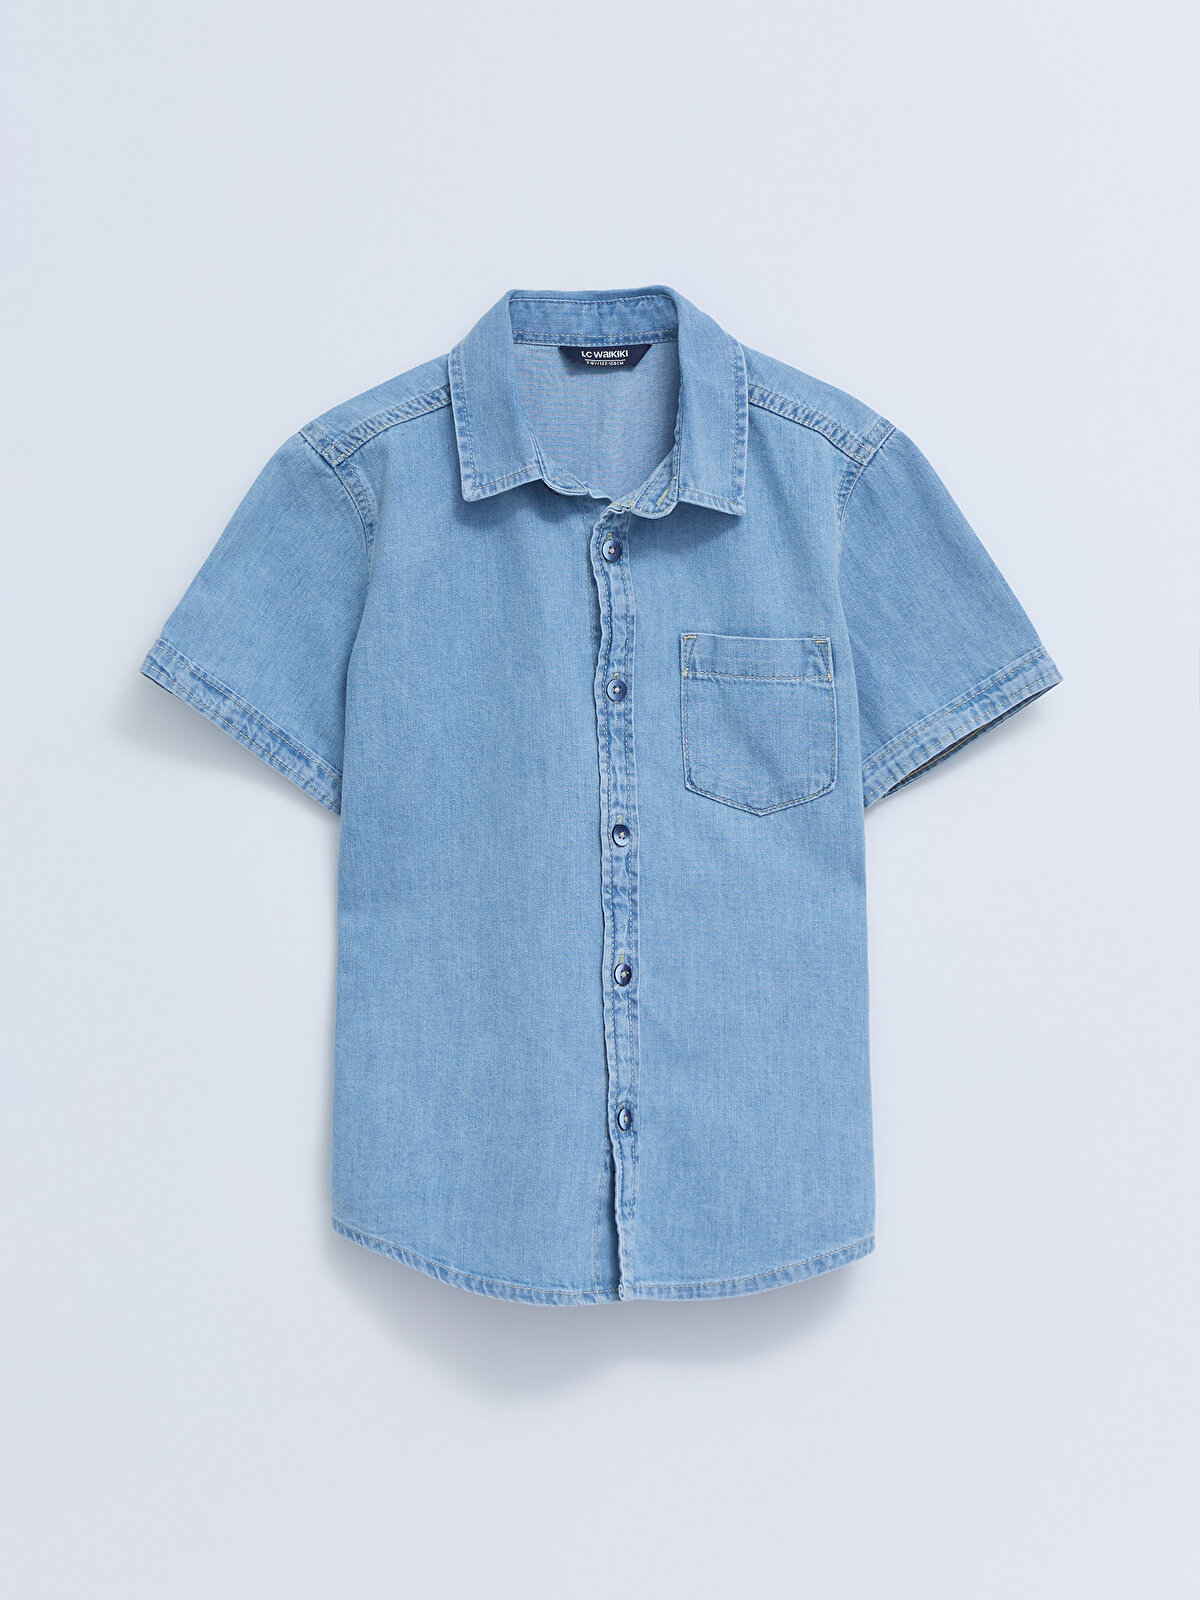 Basic Short Sleeve Boy Jean Shirt -S20971Z4-311 - S20971Z4-311 - LC Waikiki